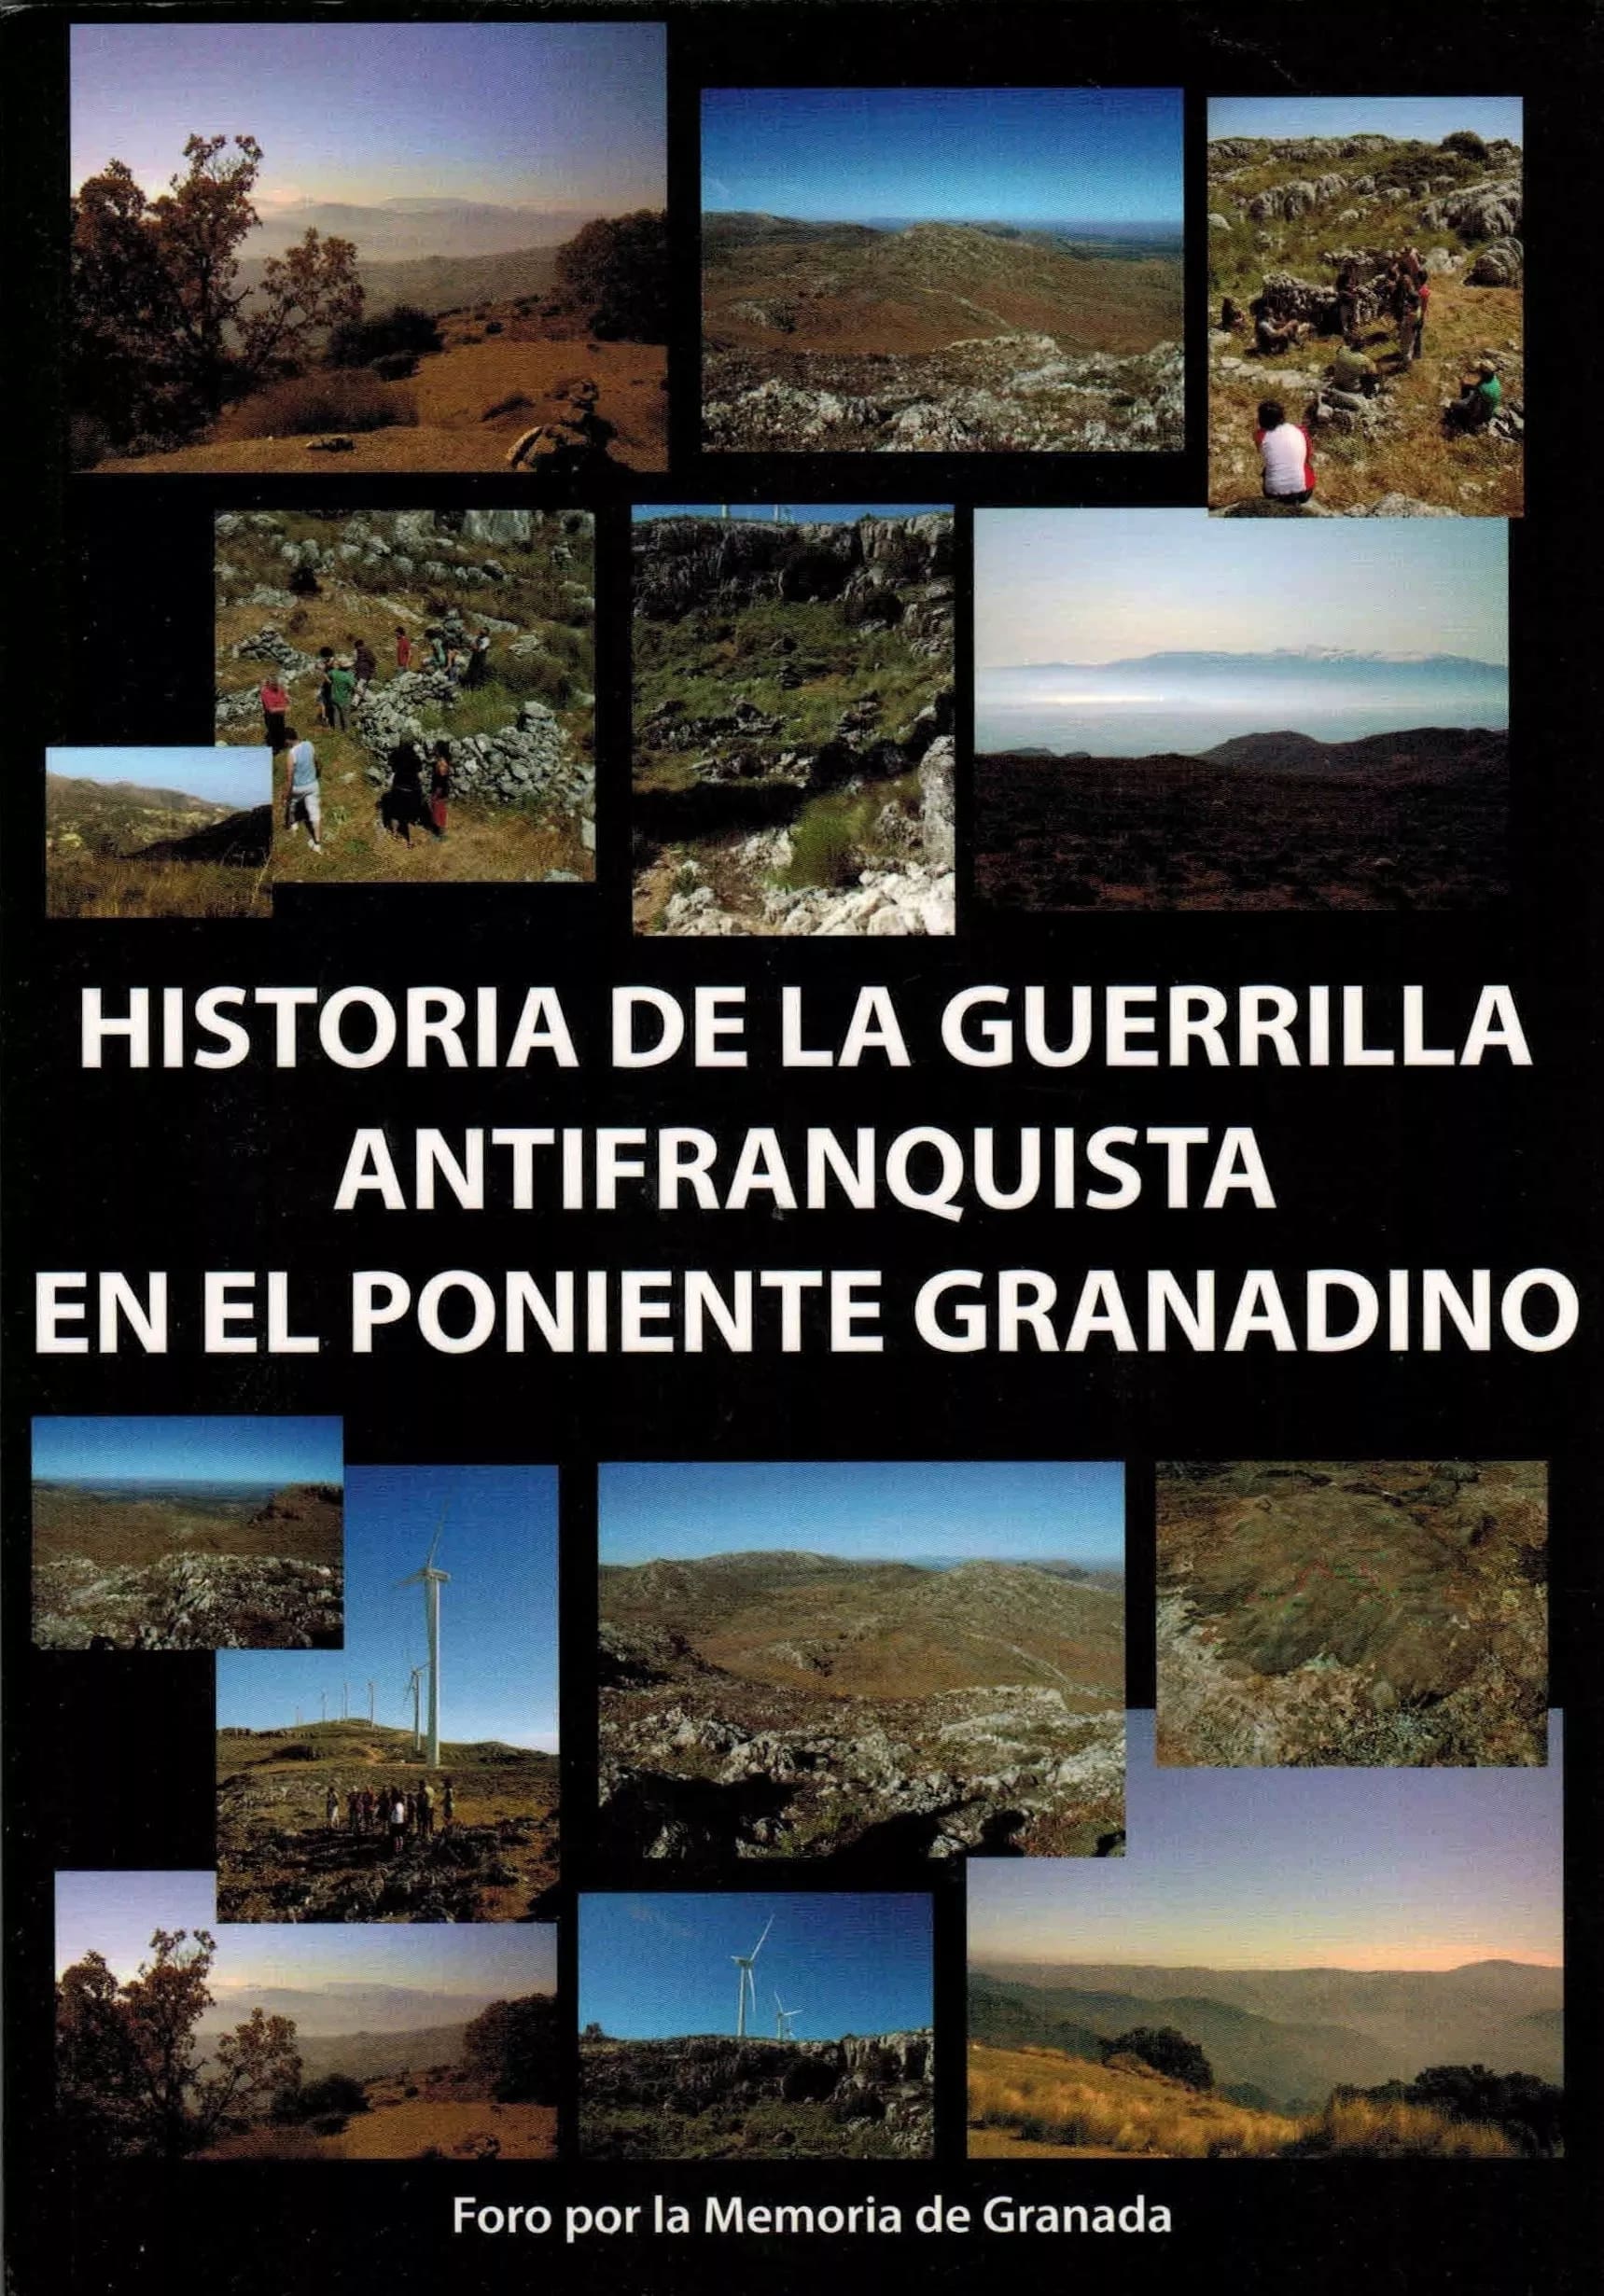 Historia de la guerrilla antifranquista en el Poniente granadino